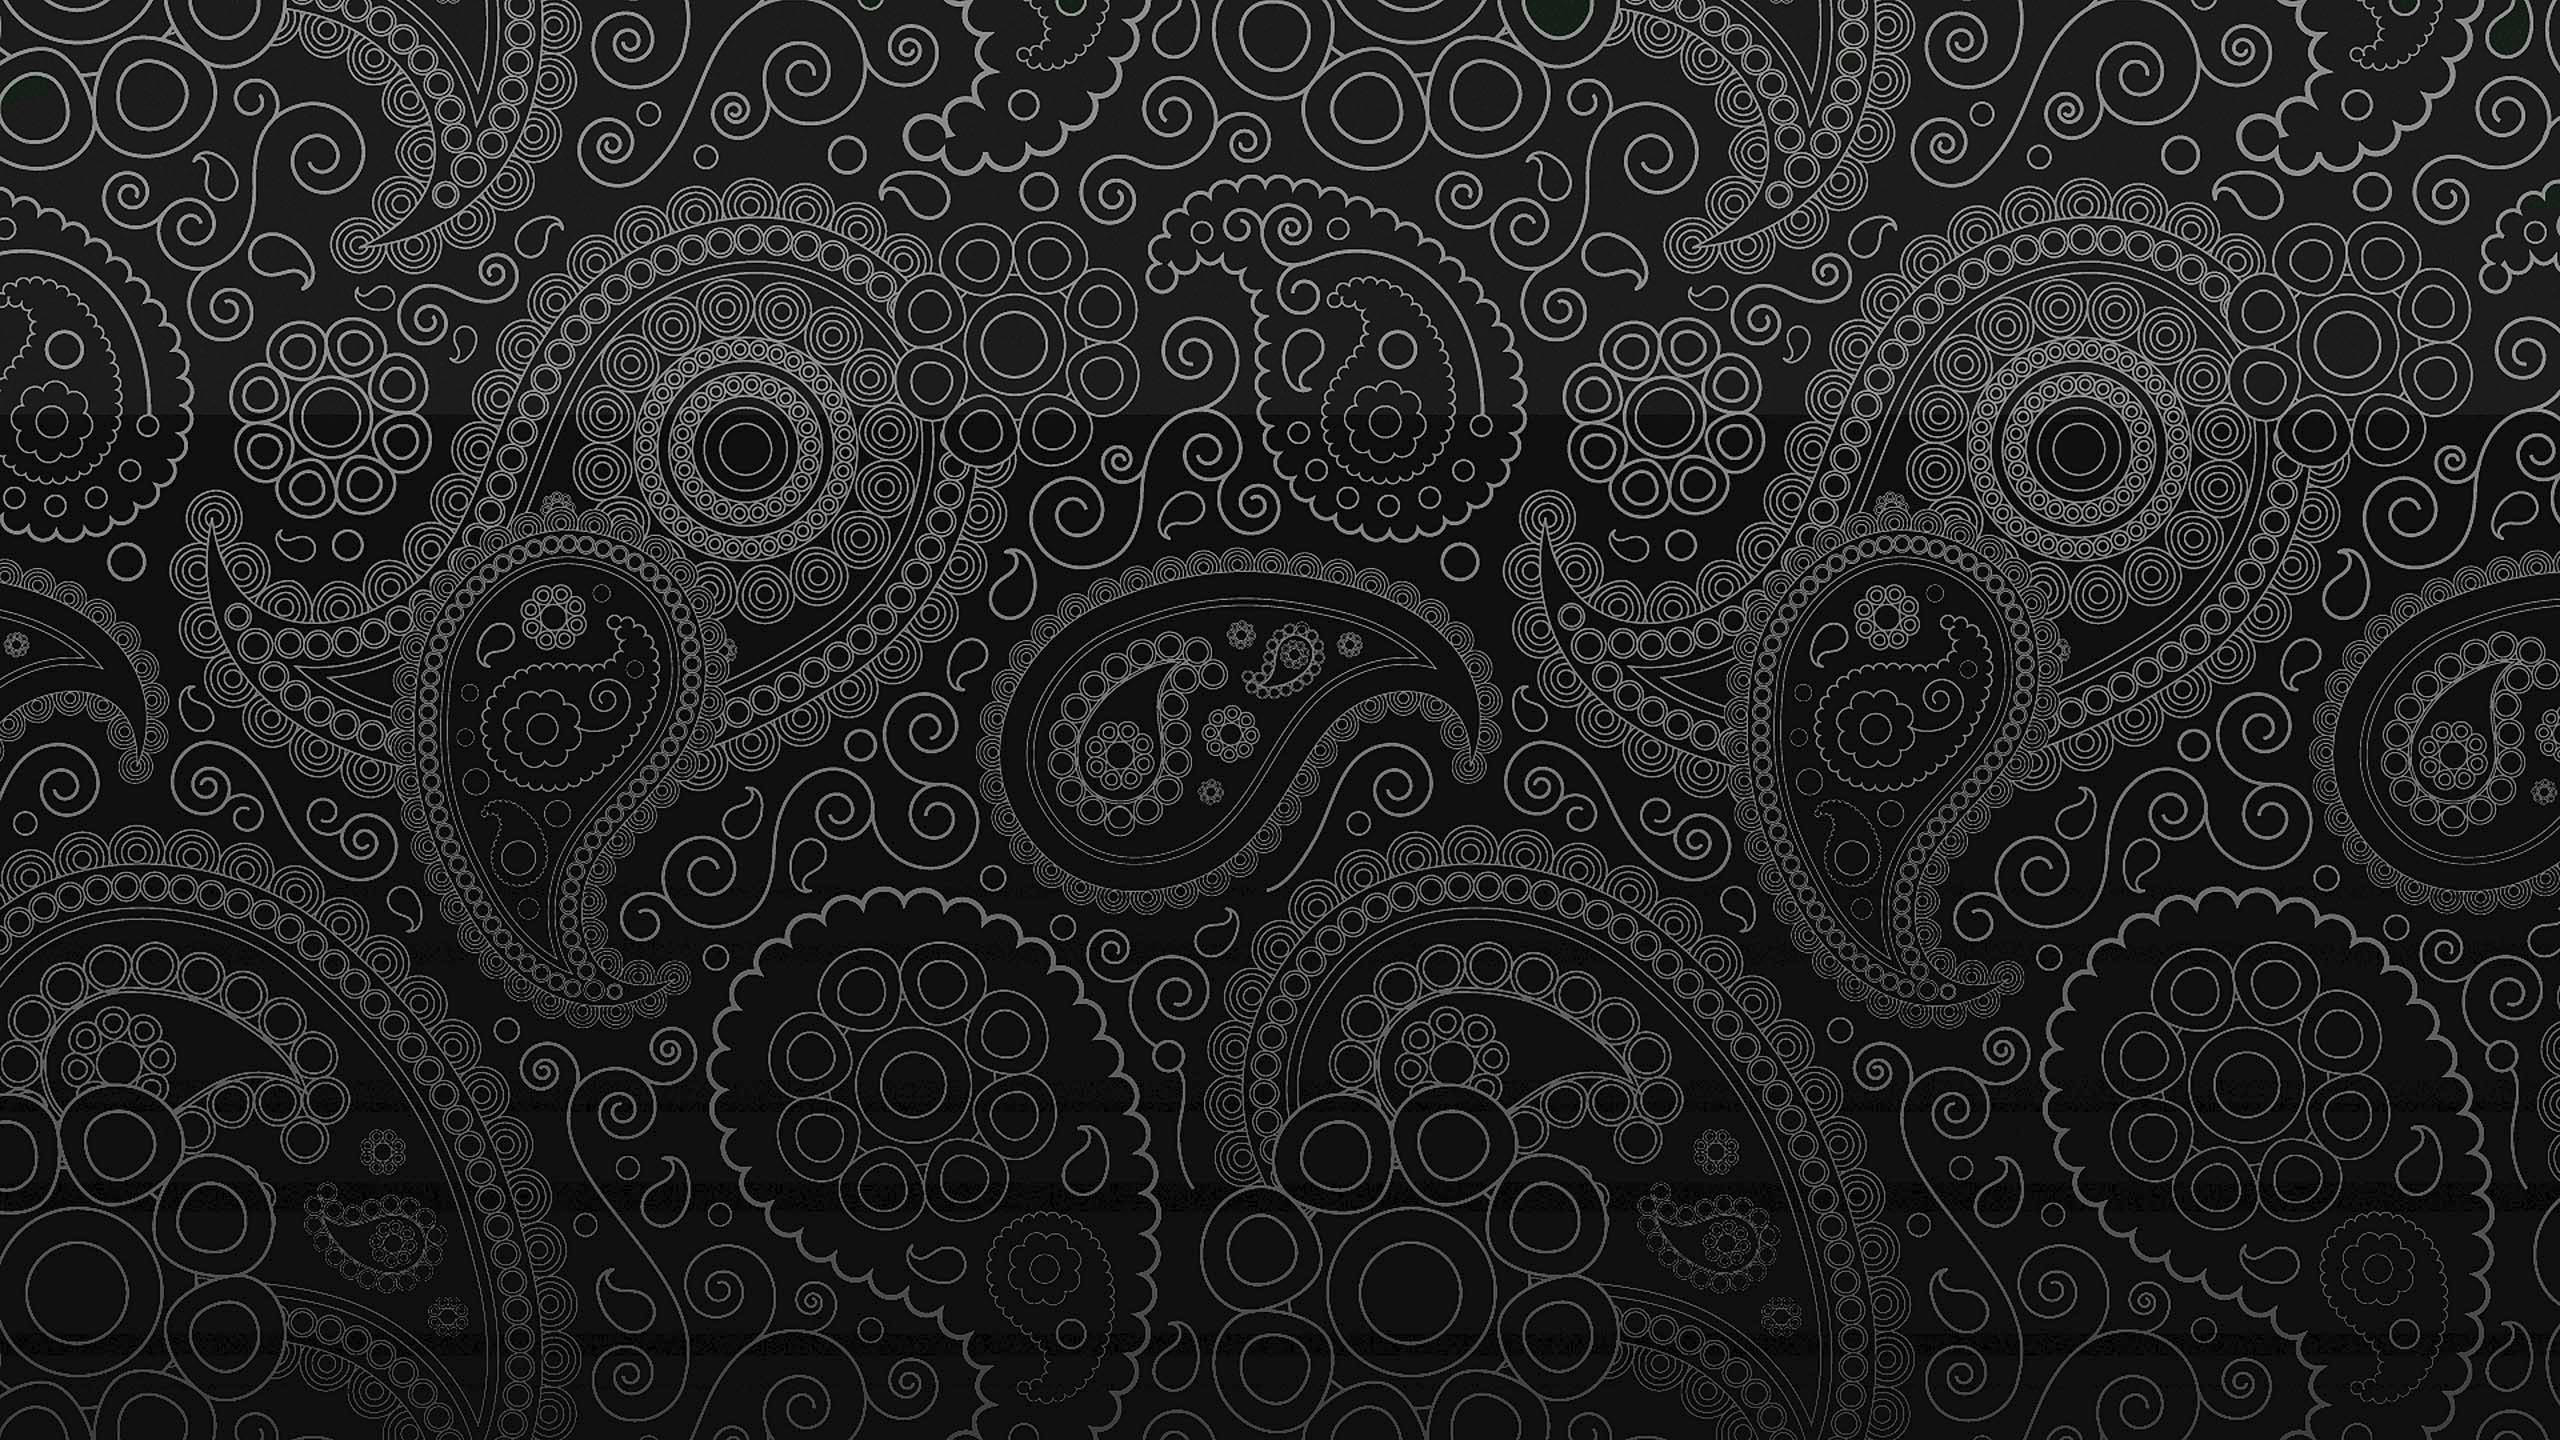 pixelstick patterns on a black background